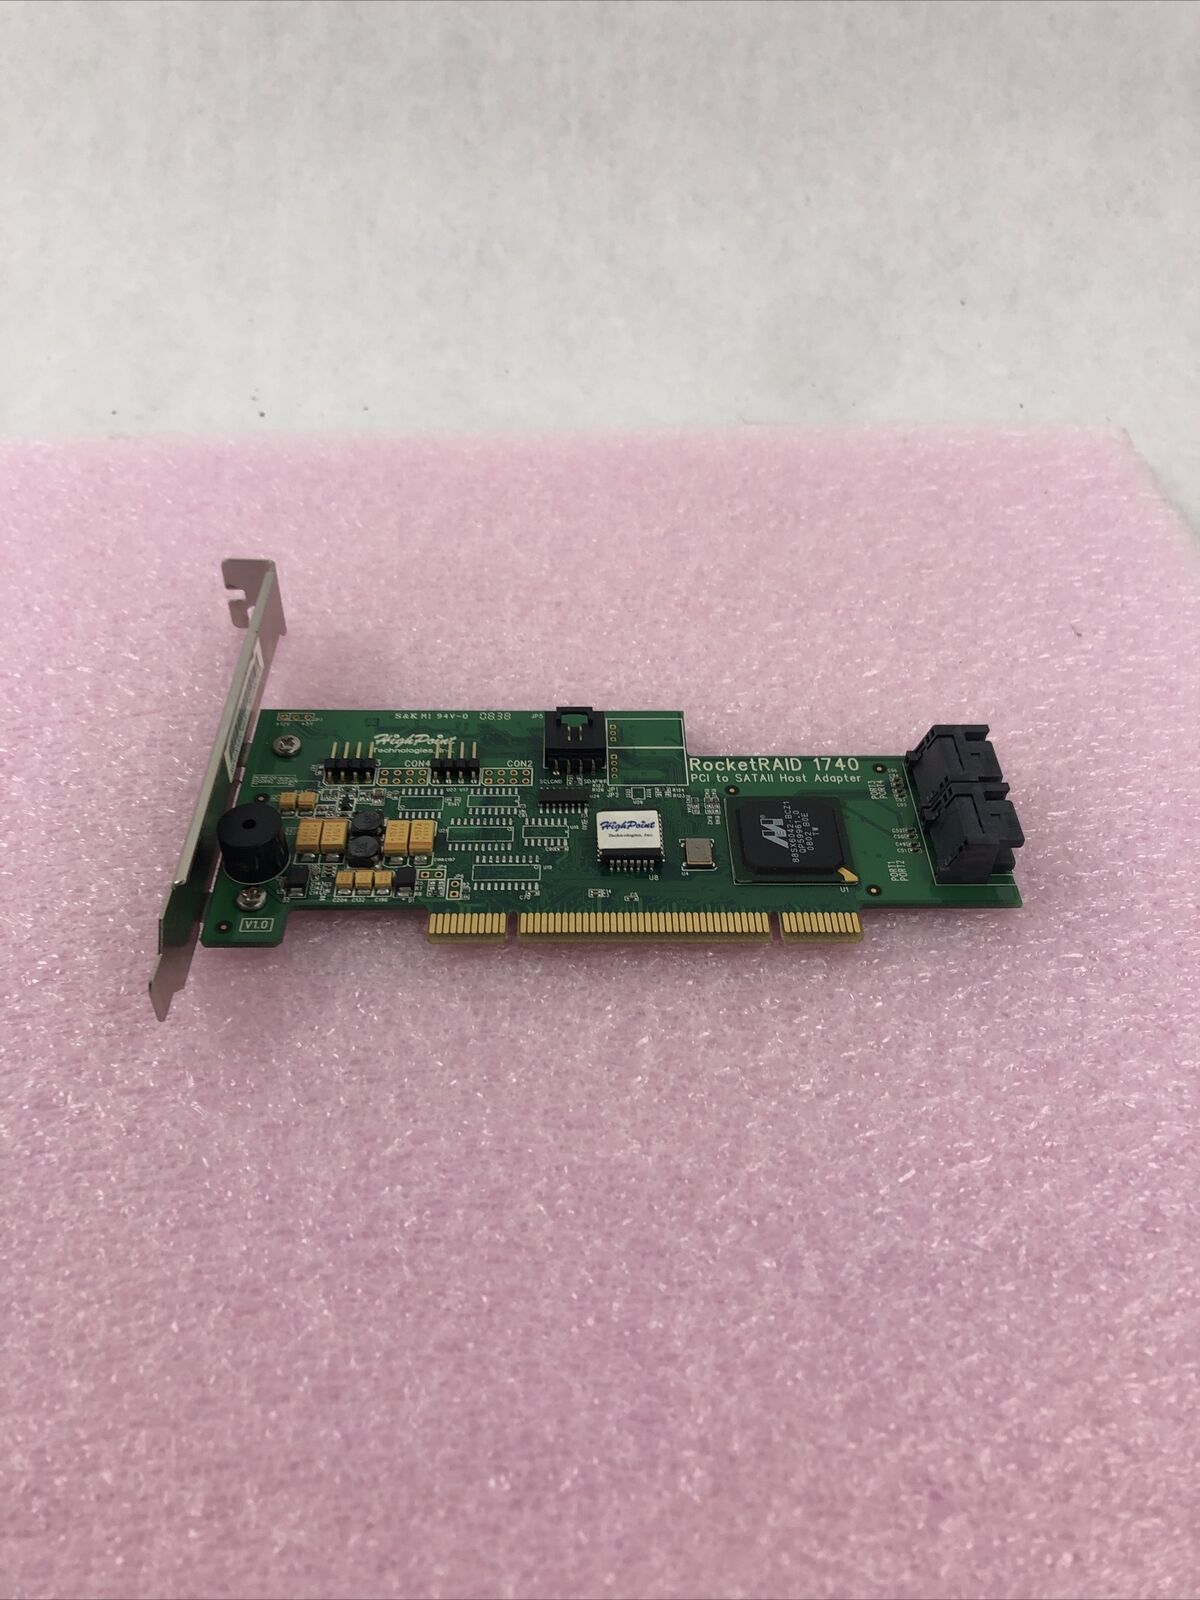 HIGHPOINT RocketRAID 1740 PCI 32-bit 33/66MHz 4x SATA2 RAID